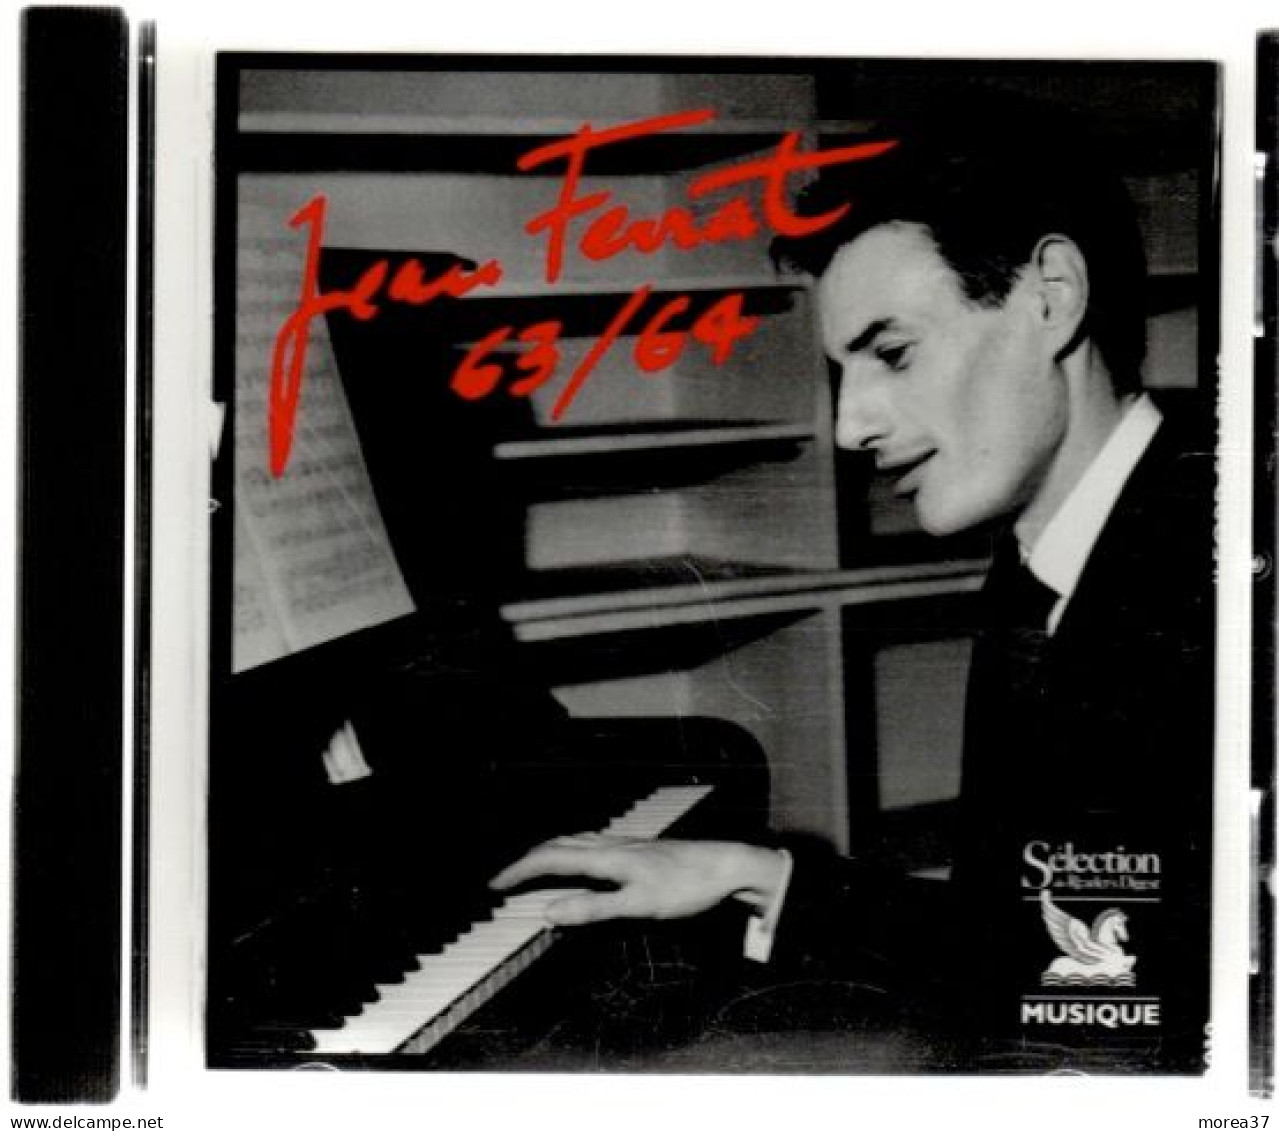 JEAN FERRAT  Coffret De 5 Cds     1961 / 1971      (ref CD2) - Autres - Musique Française